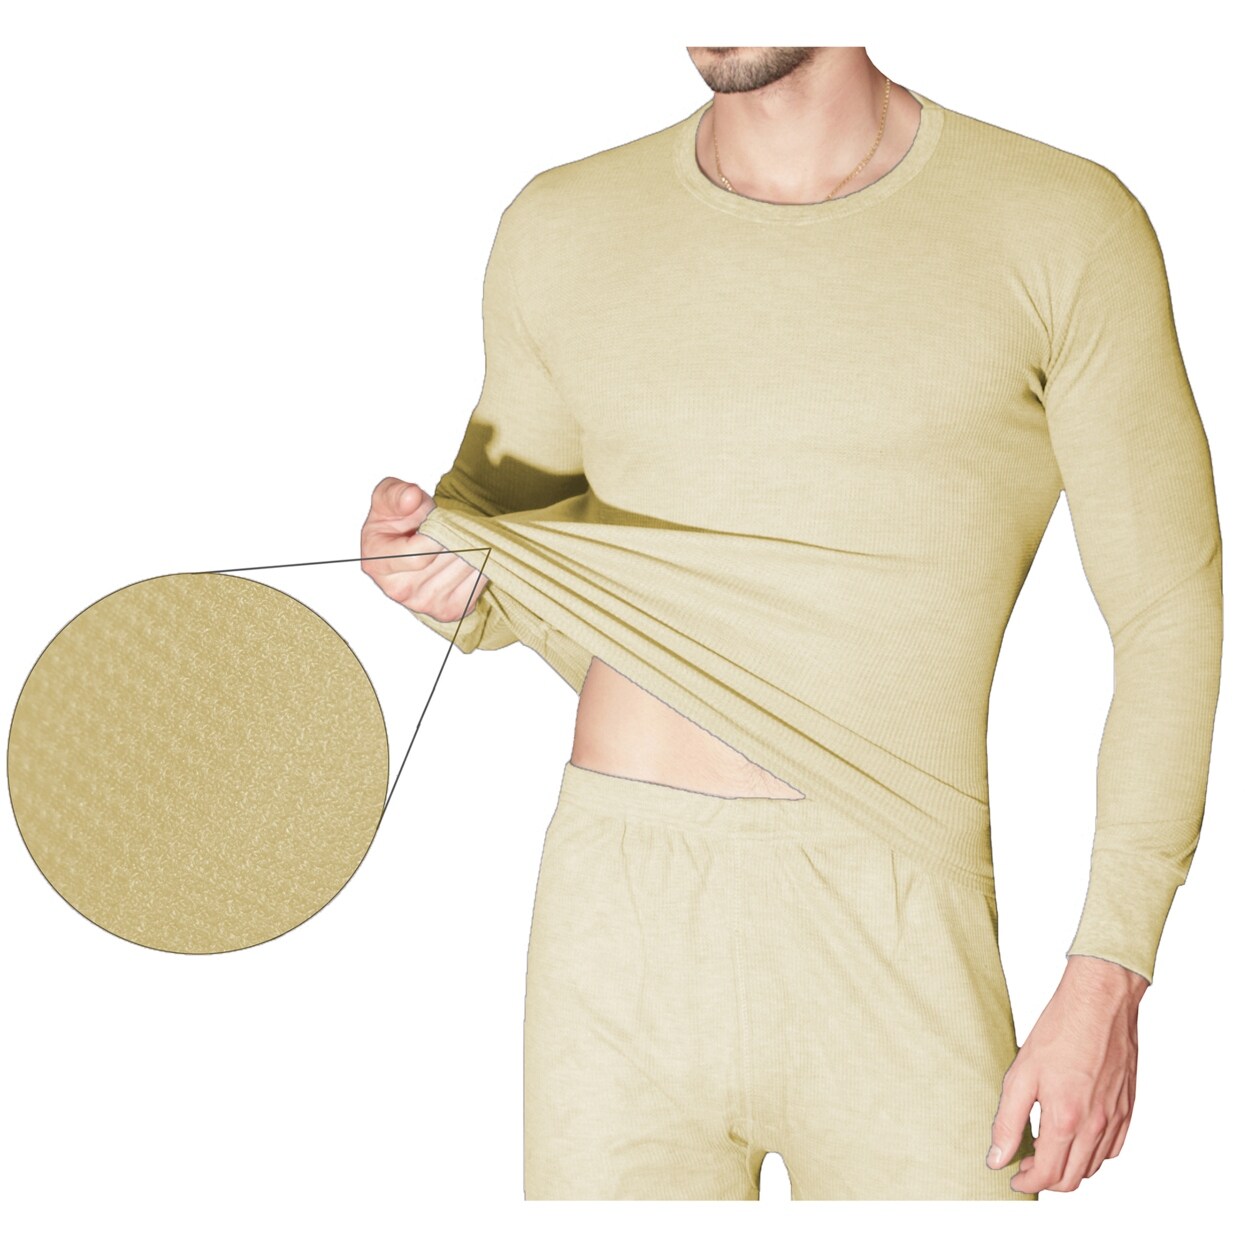 100 cotton thermal underwear mens